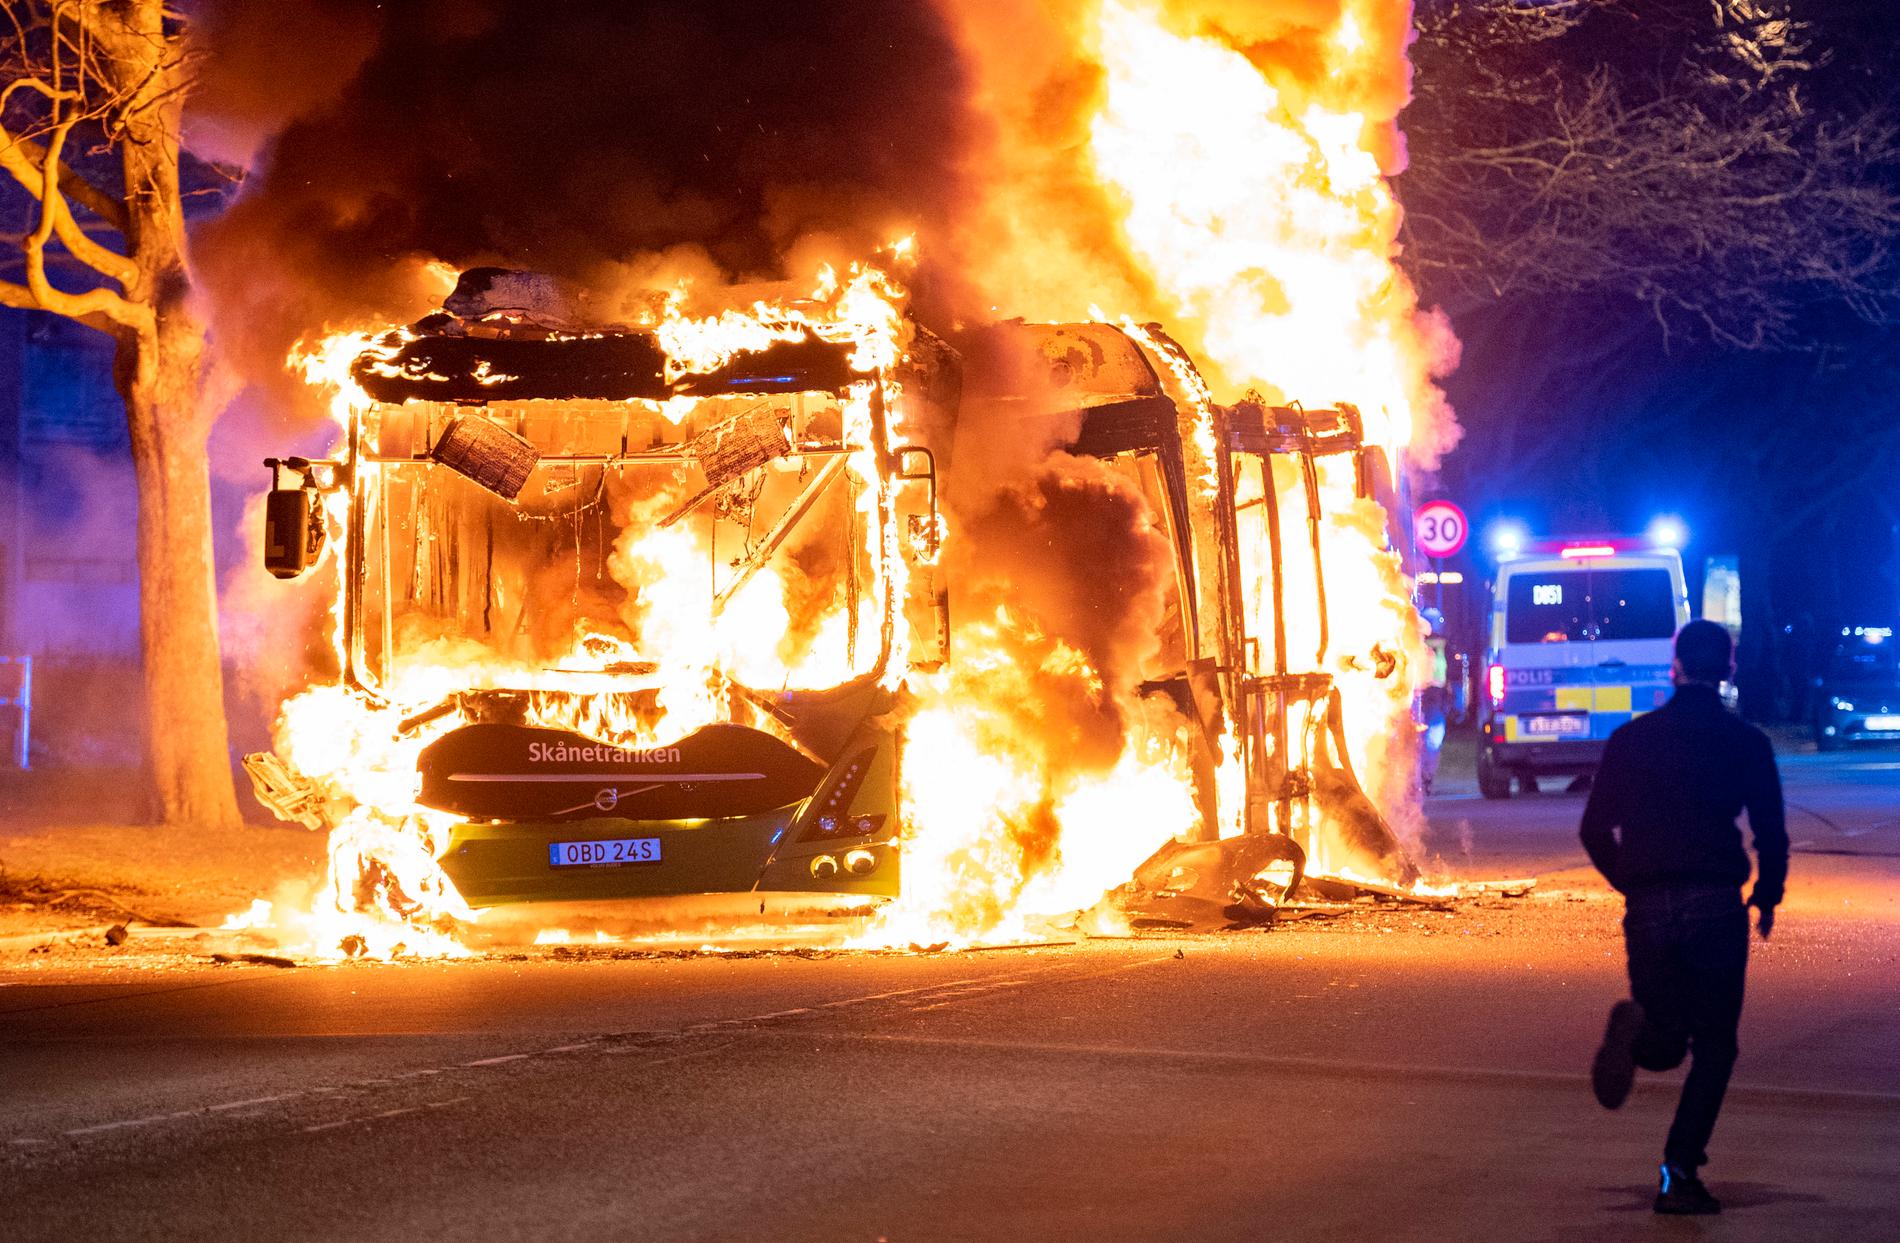 En stadsbuss brinner på Västra Kattarpsvägen på Rosengård i Malmö natten till söndagen – efter en lång påskhelg med våldsamma upplopp i flera städer.